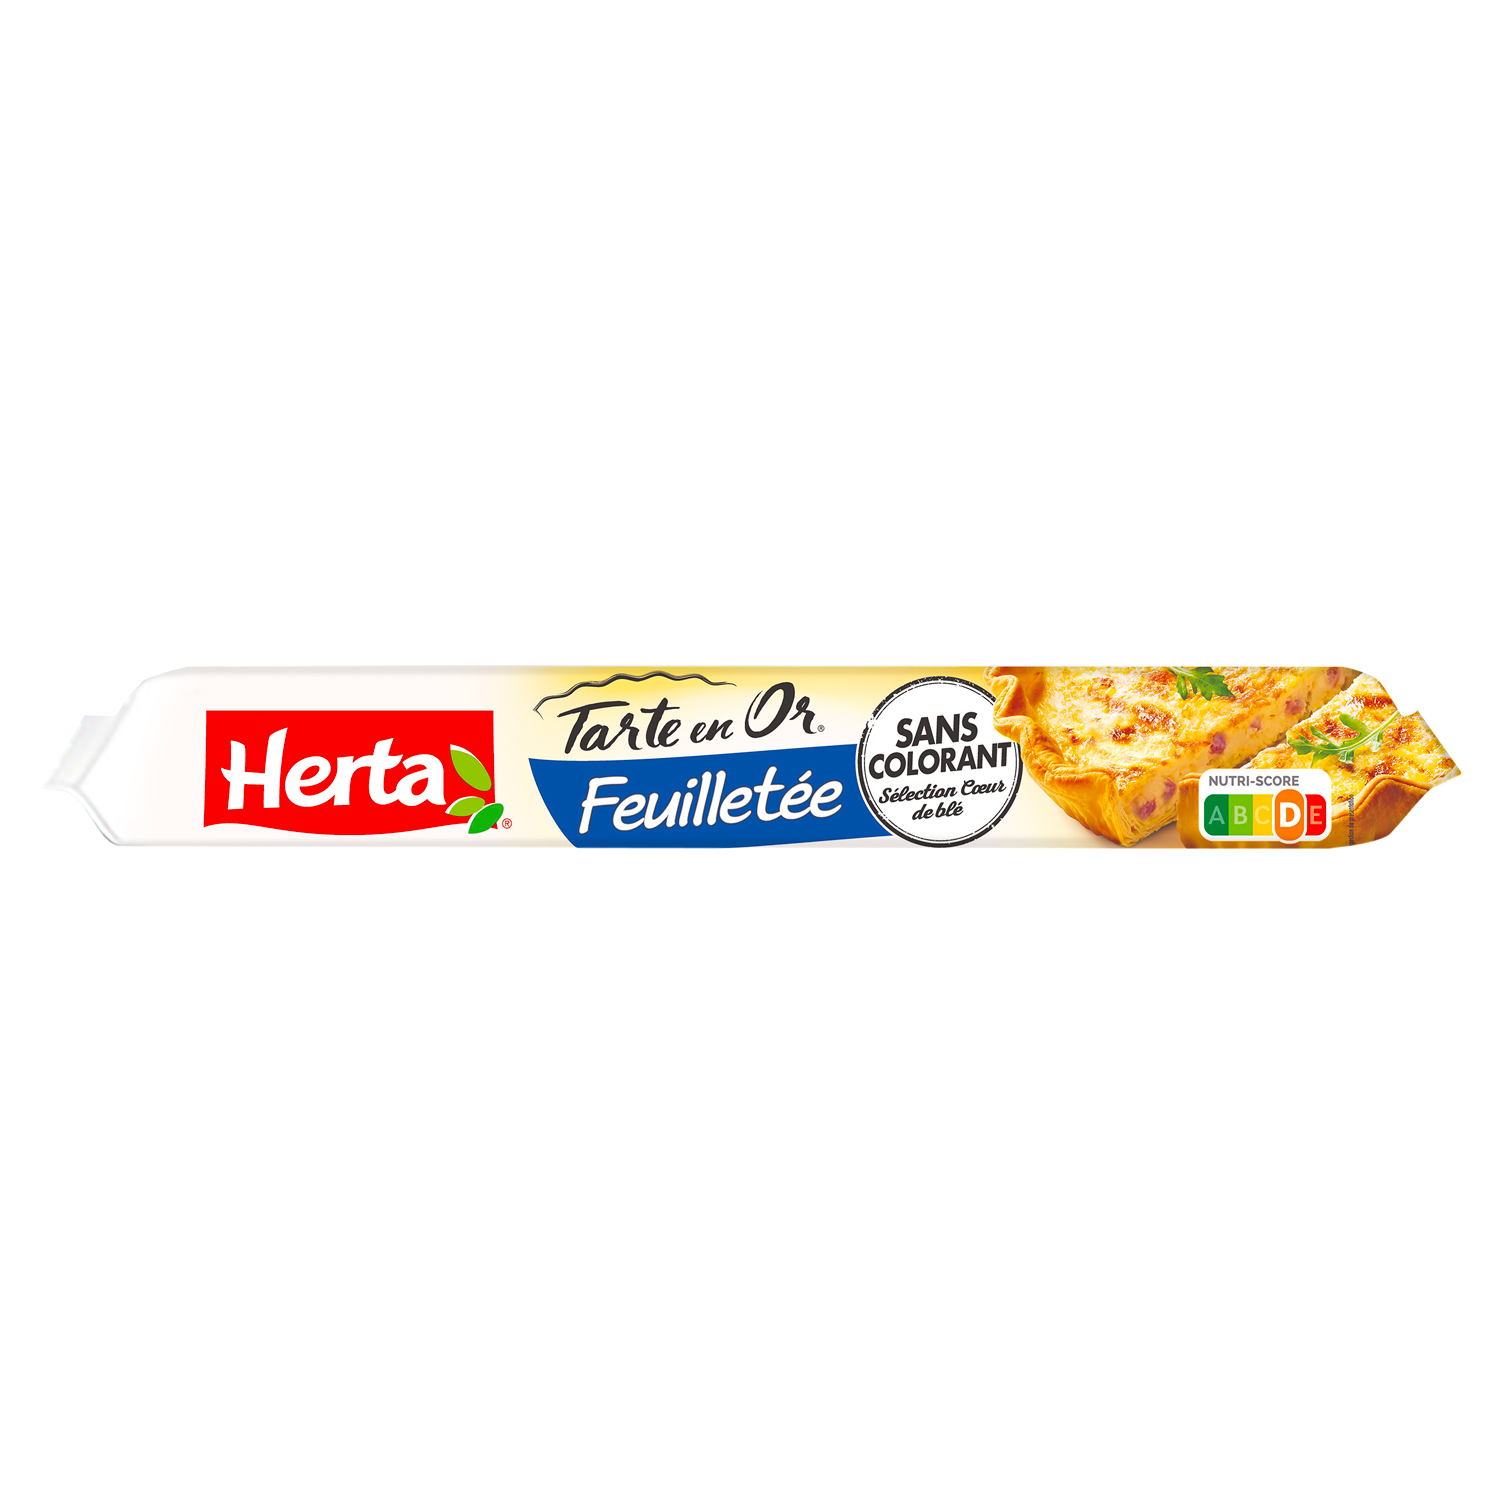 Herta® – Tarte en Or®